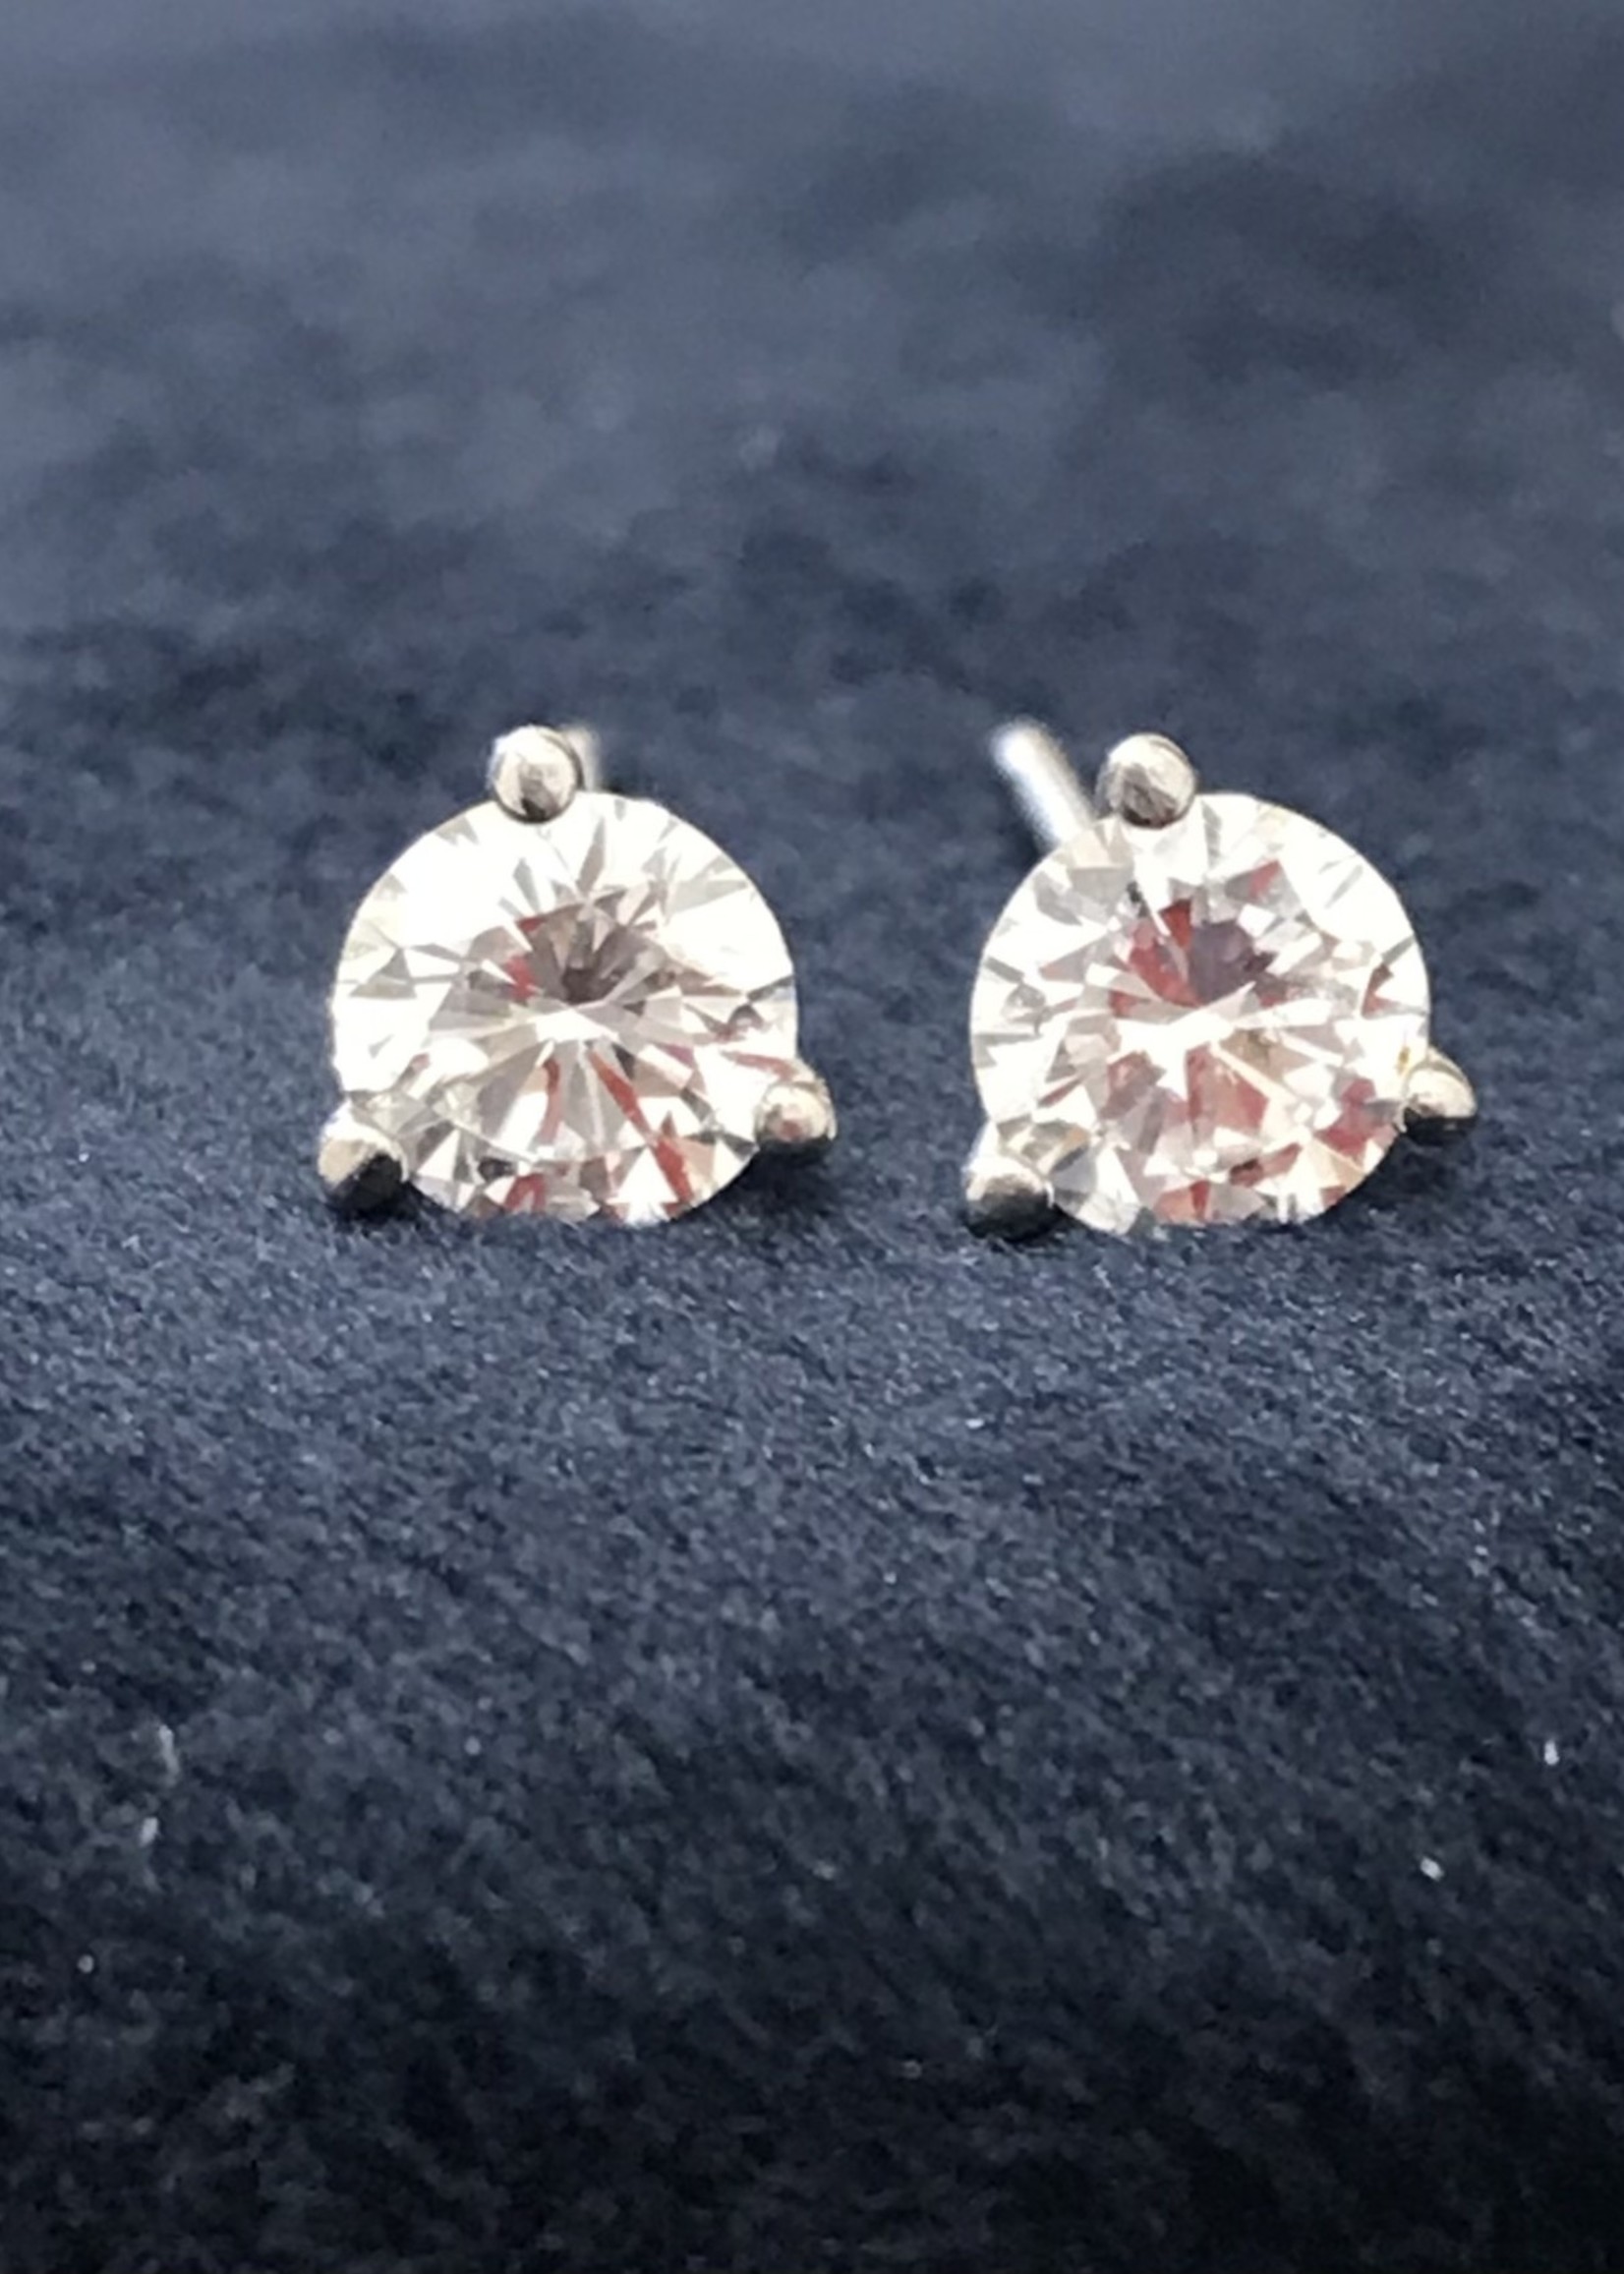 14kW .75ctw Lab Grown Diamond Stud Earrings EF/SI